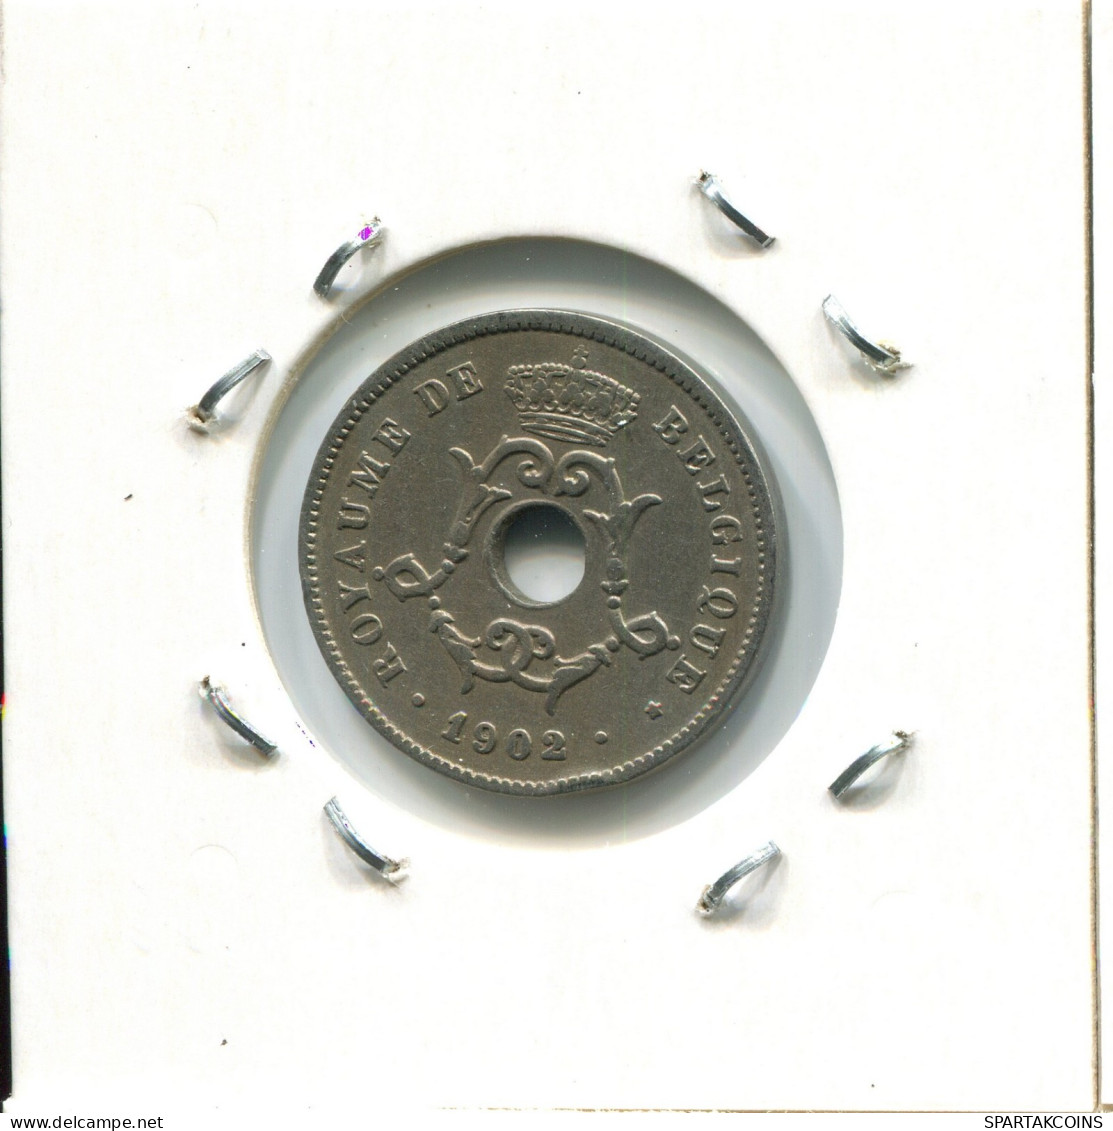 10 CENTIMES 1902 FRENCH Text BÉLGICA BELGIUM Moneda #AW262.E.A - 10 Cent